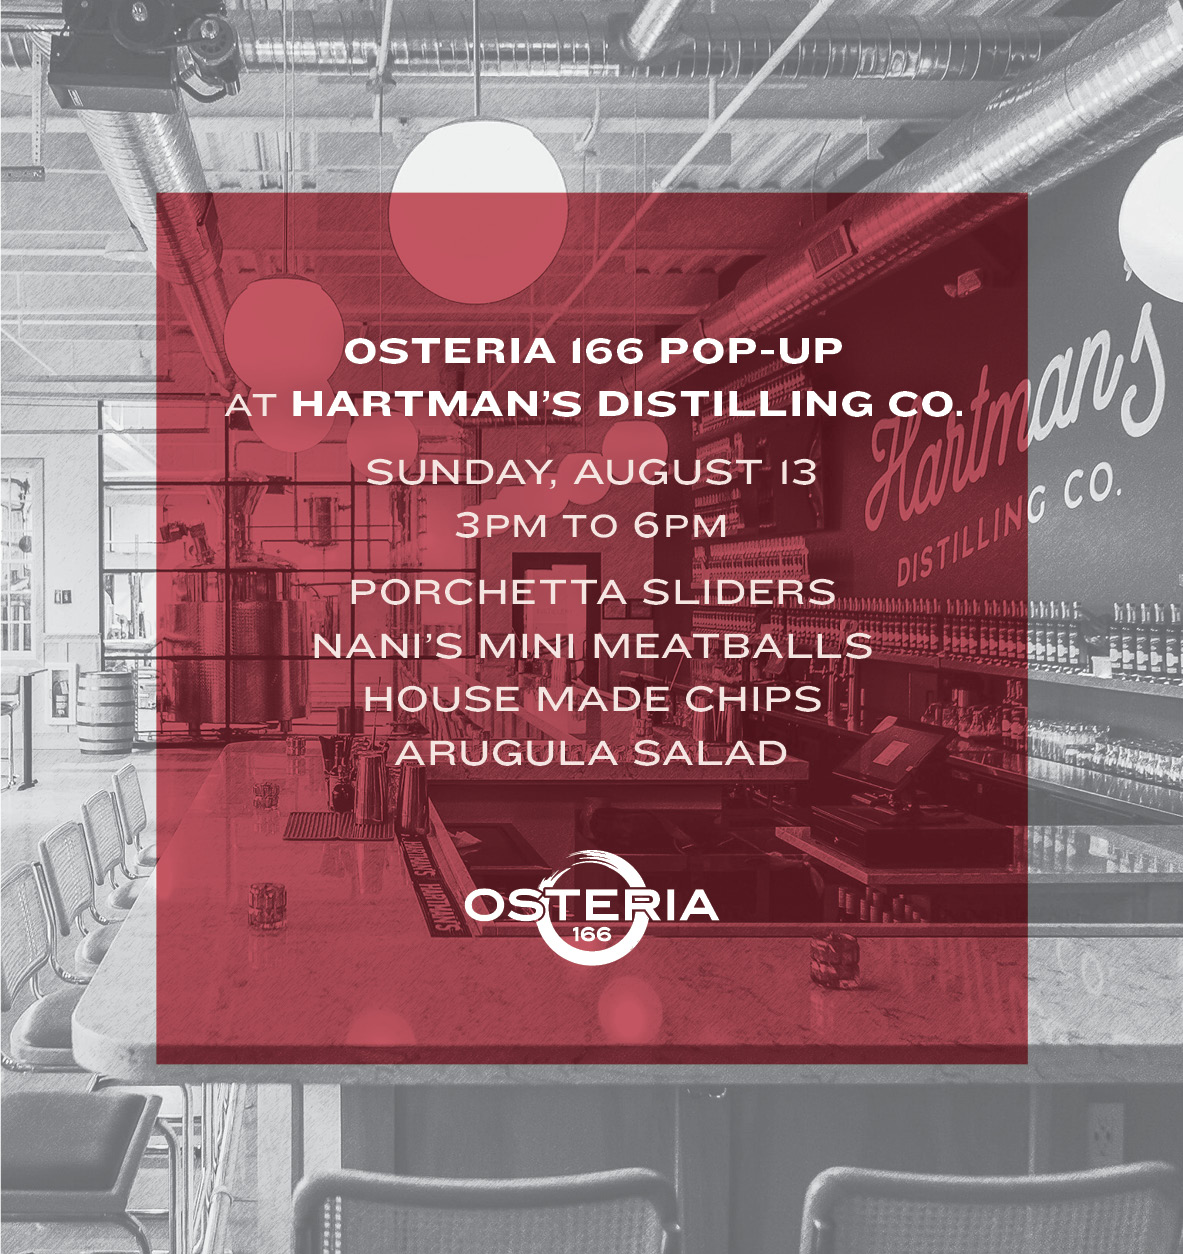 Osteria 166 Pop-Up at Hartman's Distilling Co.